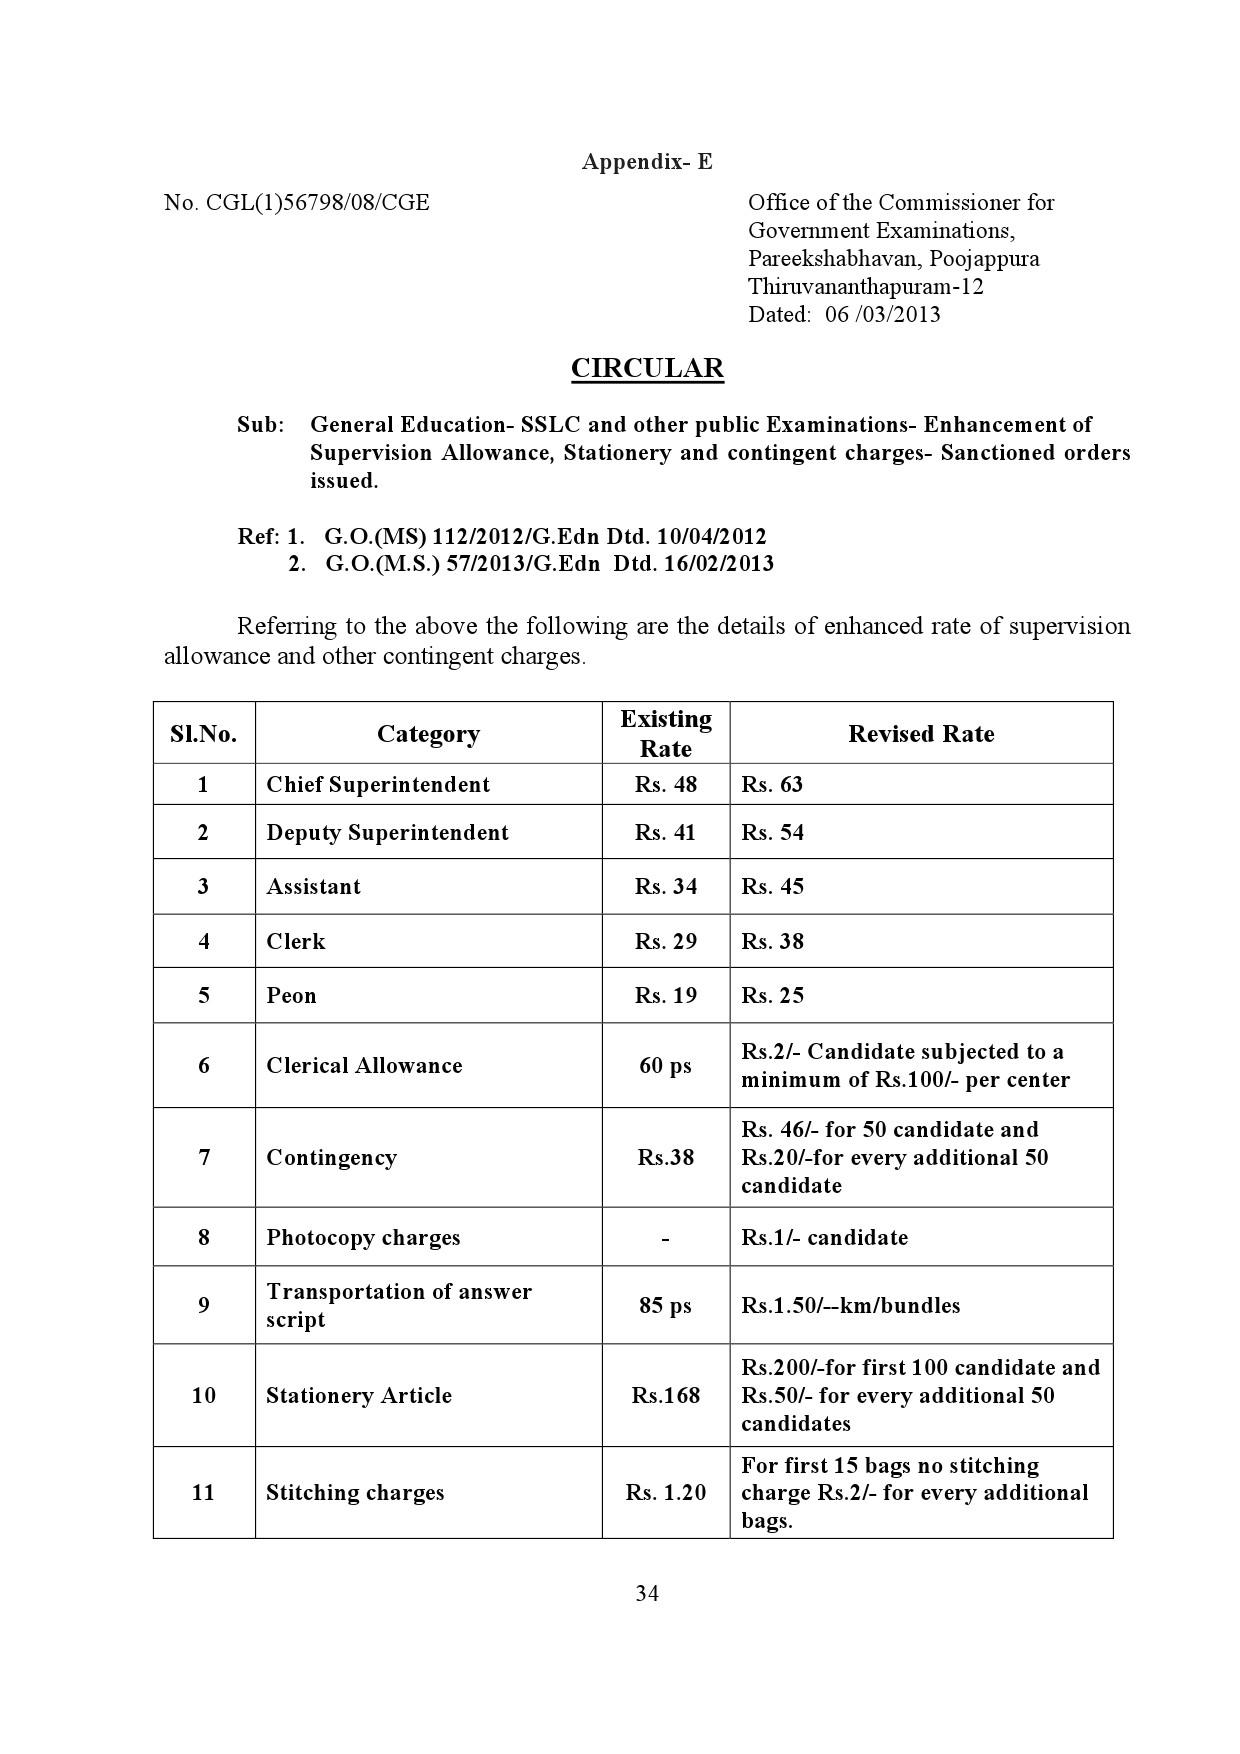 Kerala SSLC Exam Result 2019 - Notification Image 34